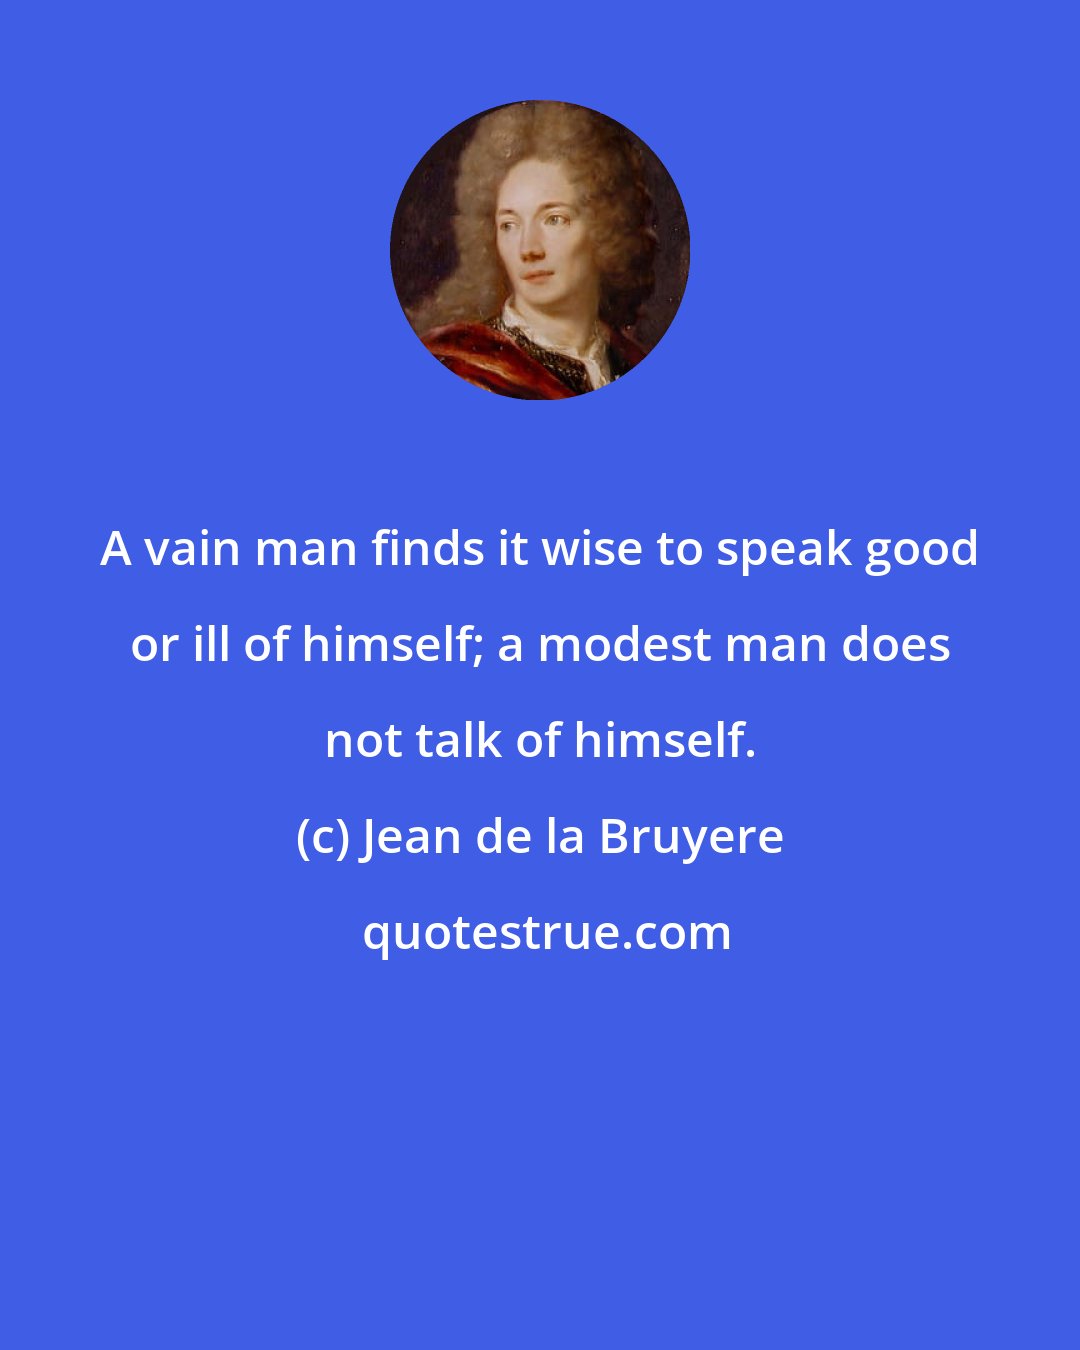 Jean de la Bruyere: A vain man finds it wise to speak good or ill of himself; a modest man does not talk of himself.